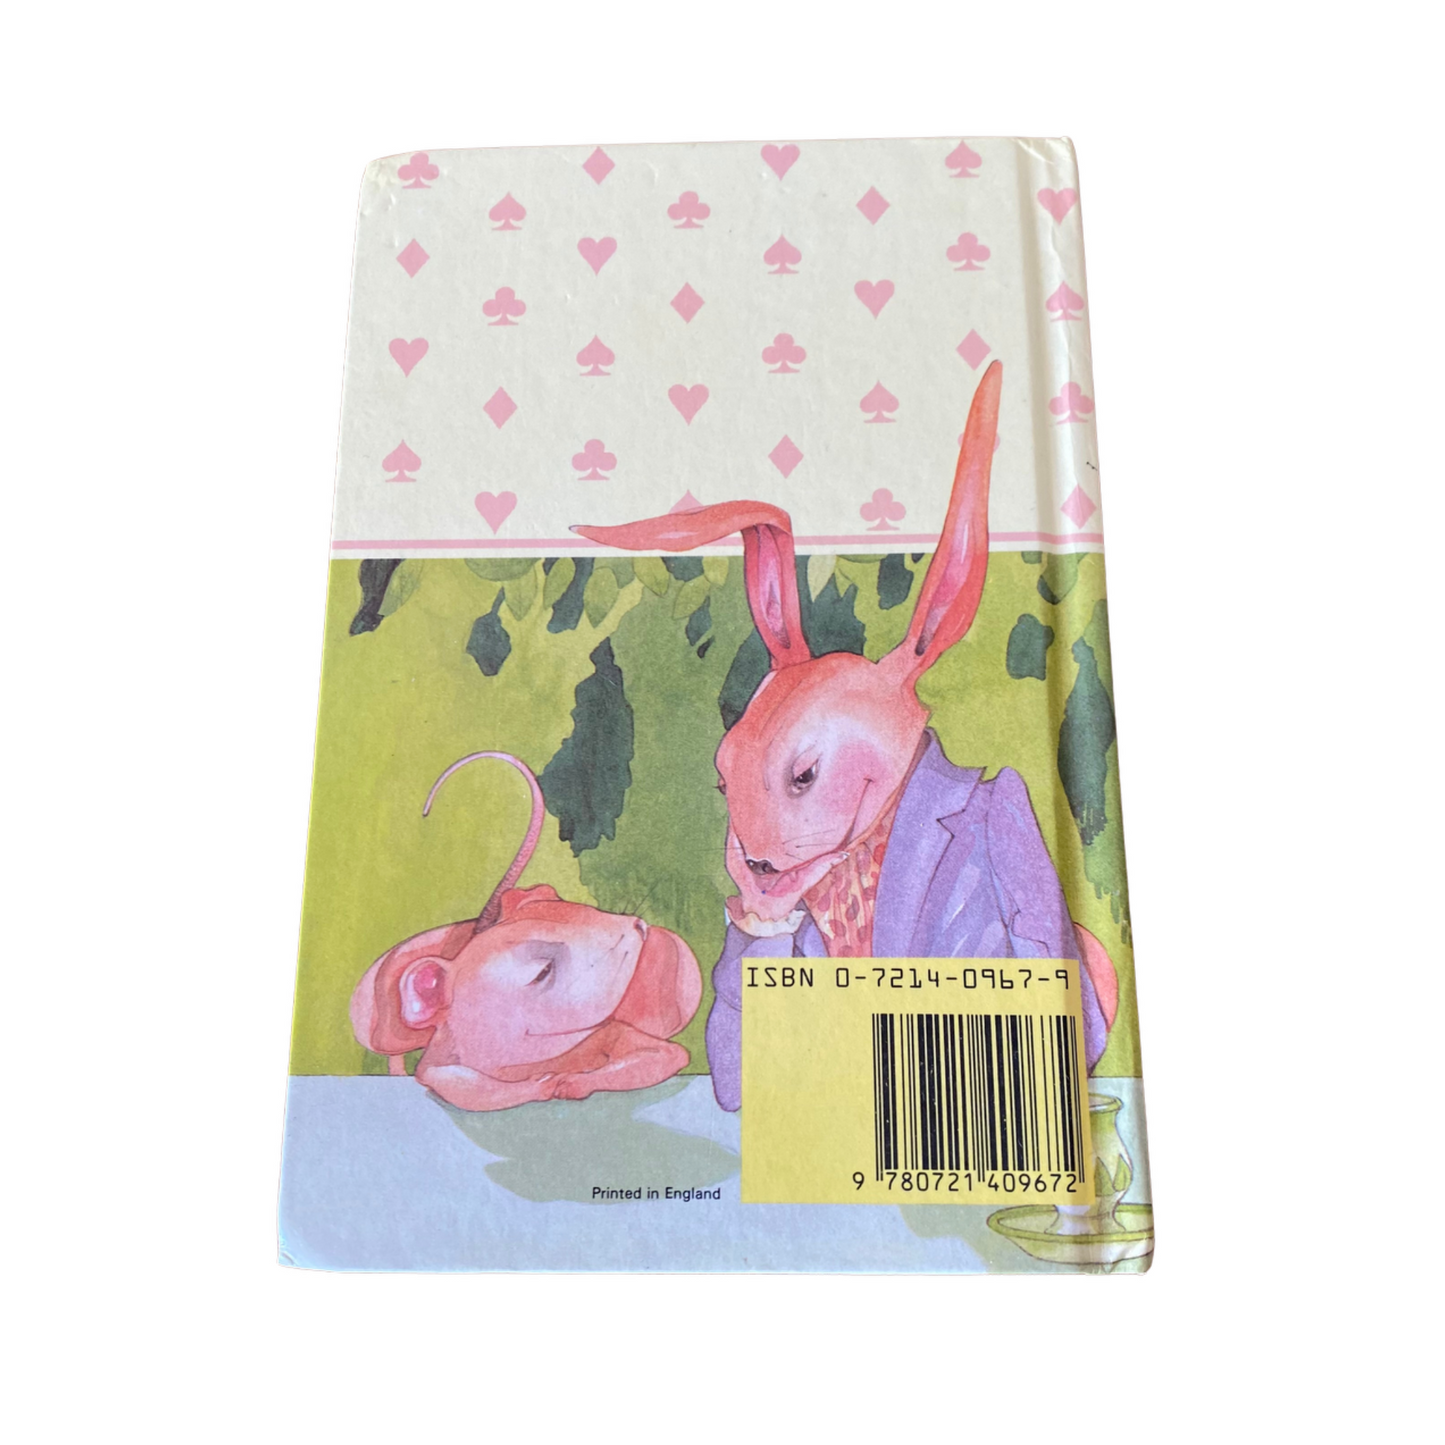 Vintage ladybird book,  Alice in Wonderland, Ladybird Children’s Classics. Series 740 . Great gift idea